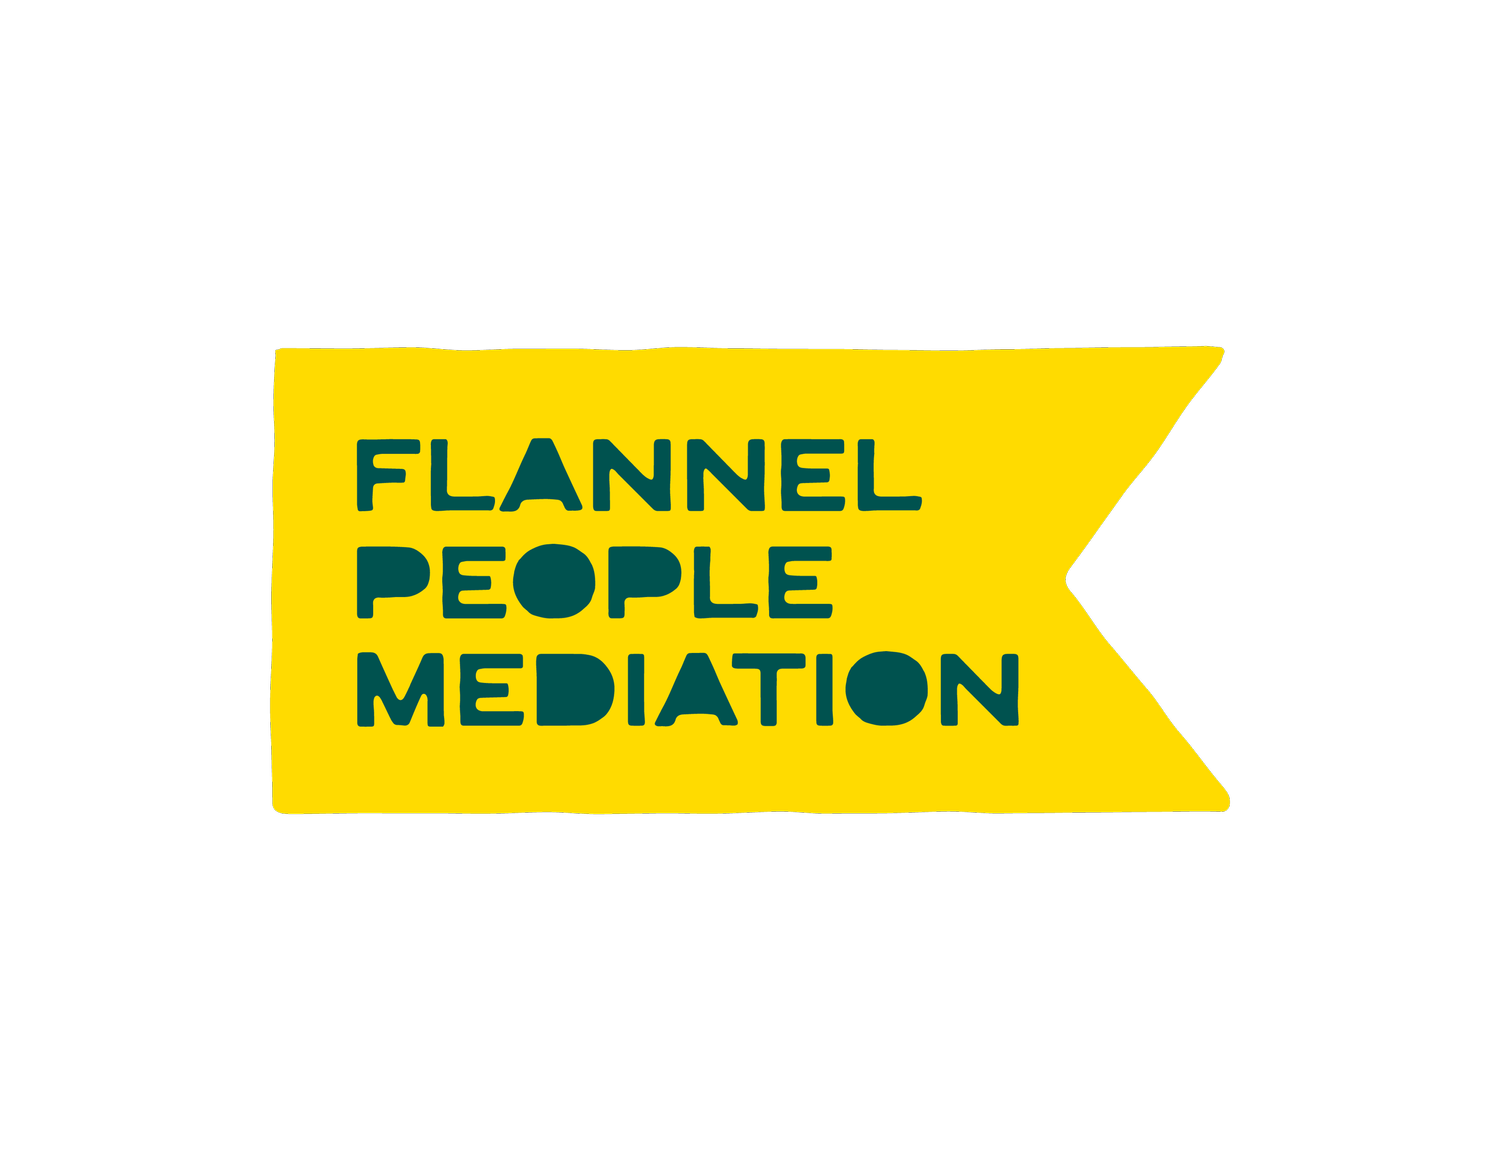 Flannel People Mediation